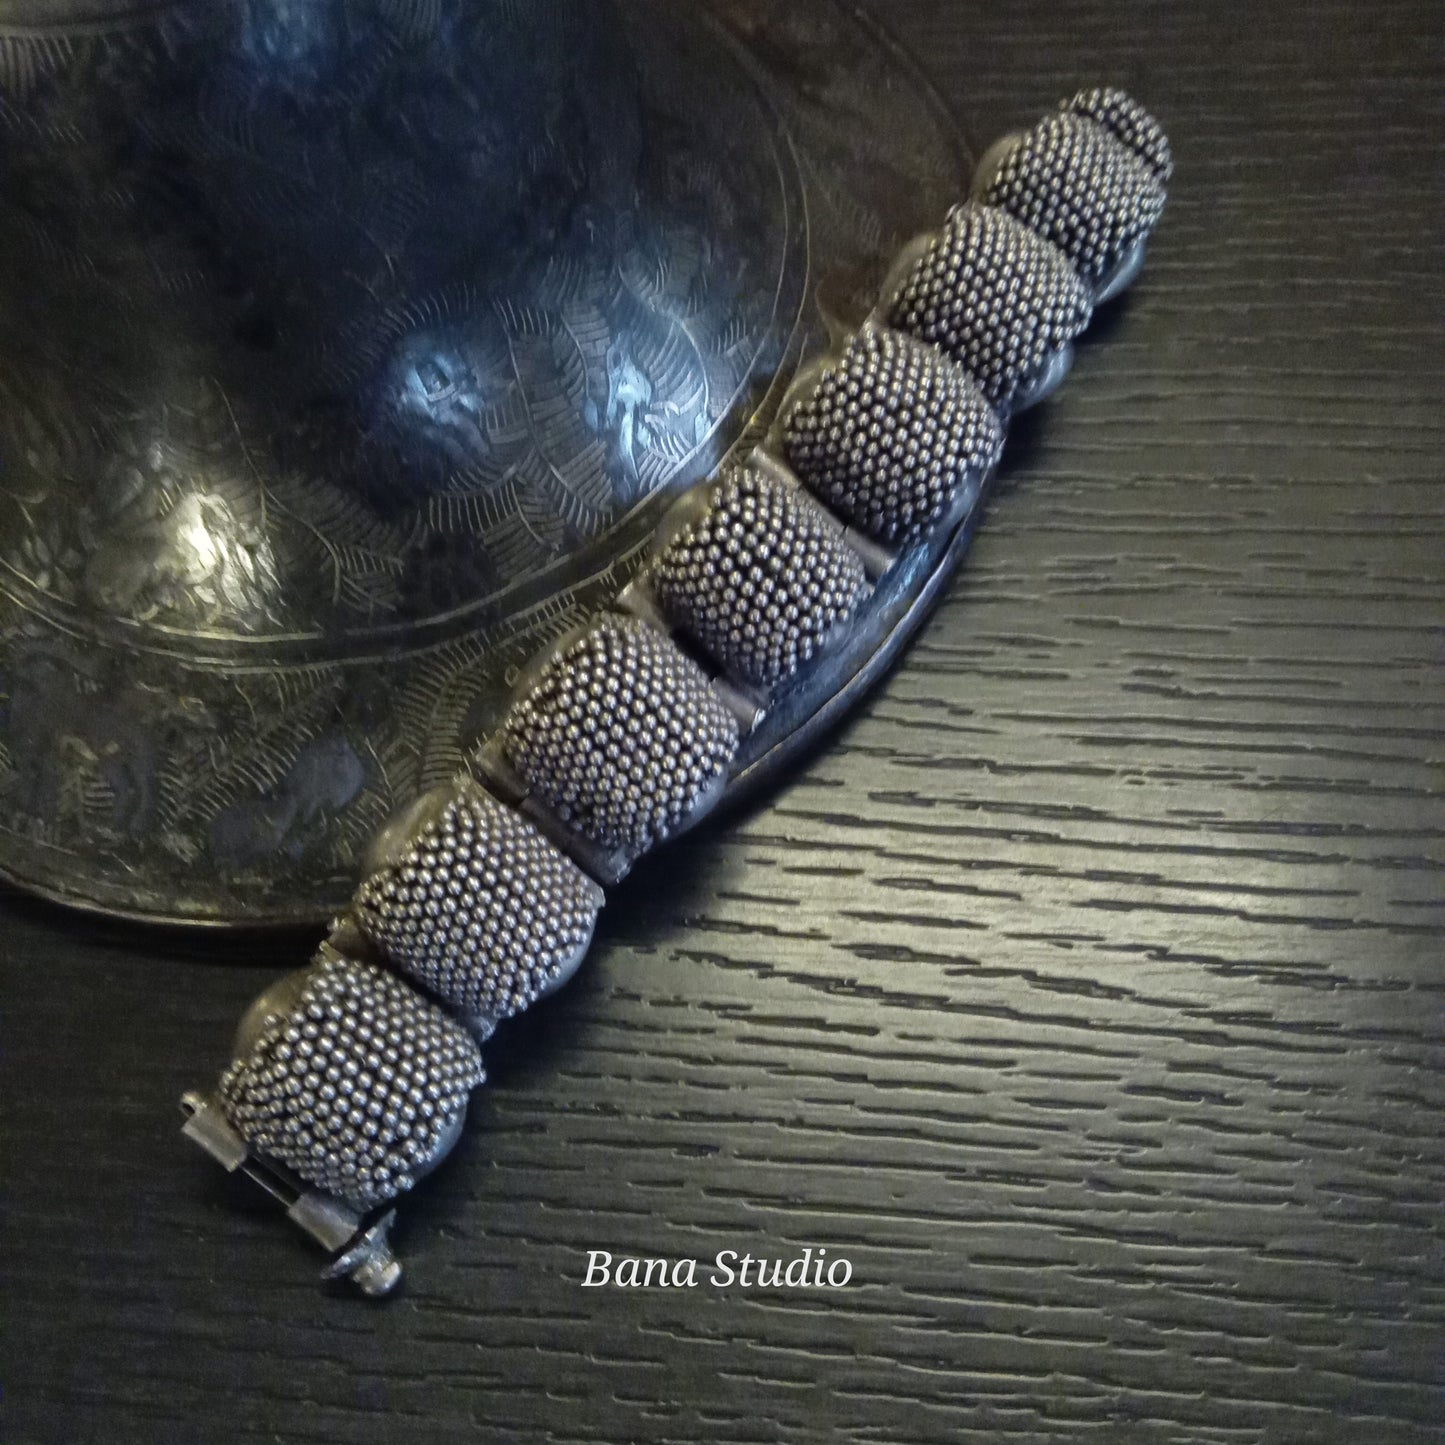 Tribal Sil Bracelet Bana Studio